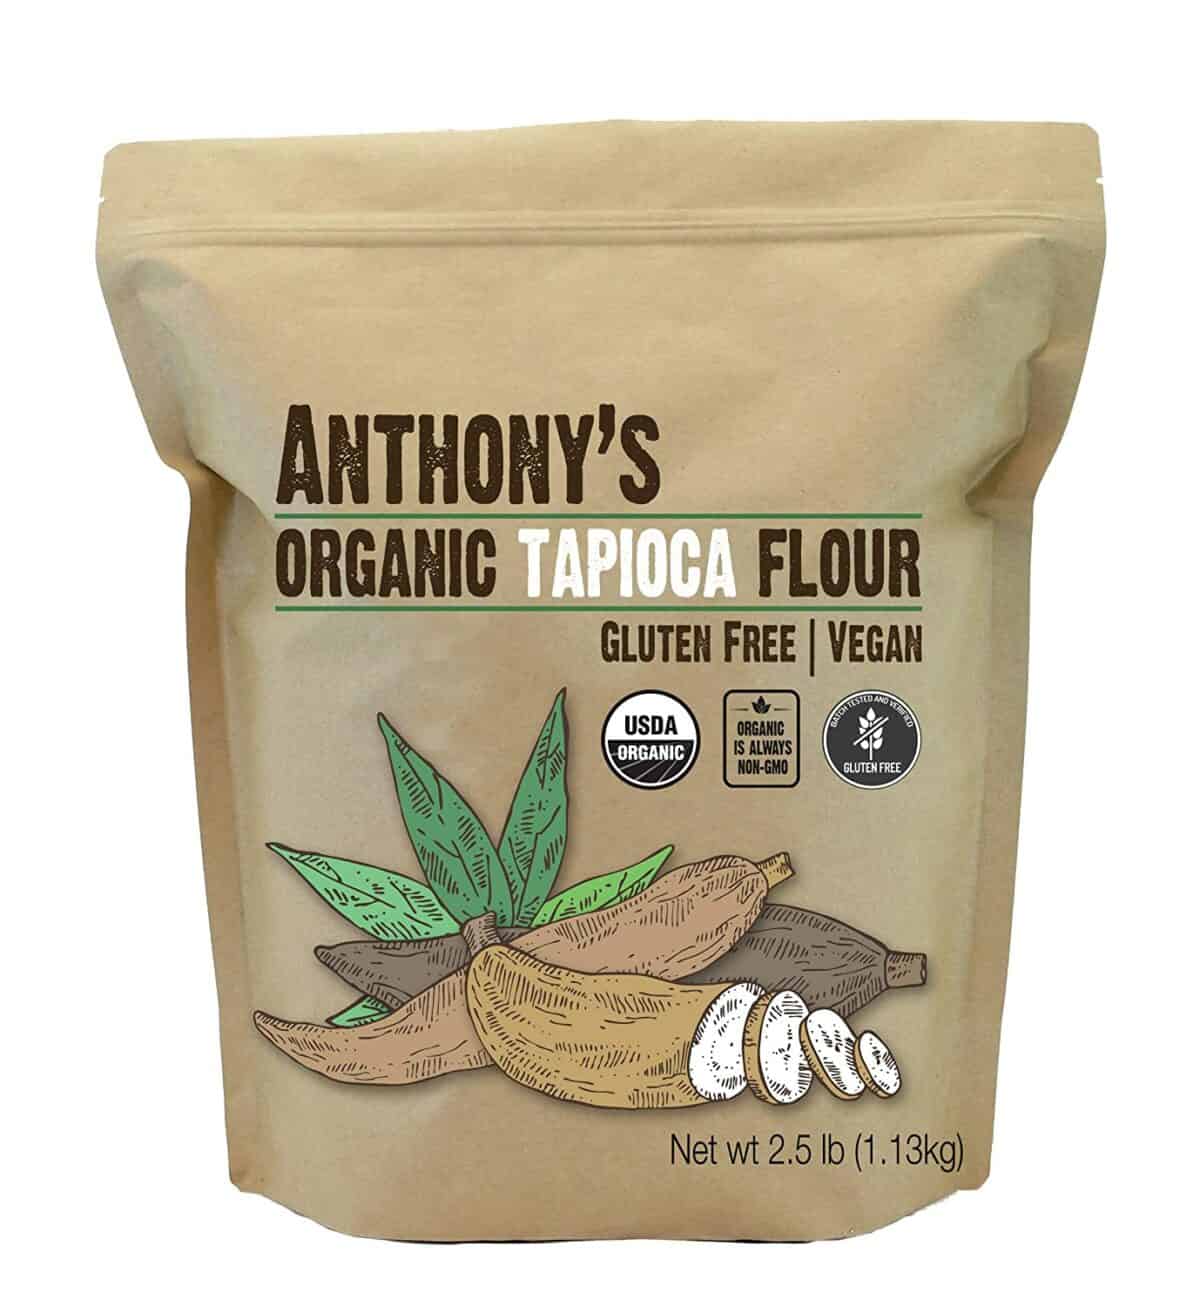 Anthonys organic tapioca phofo